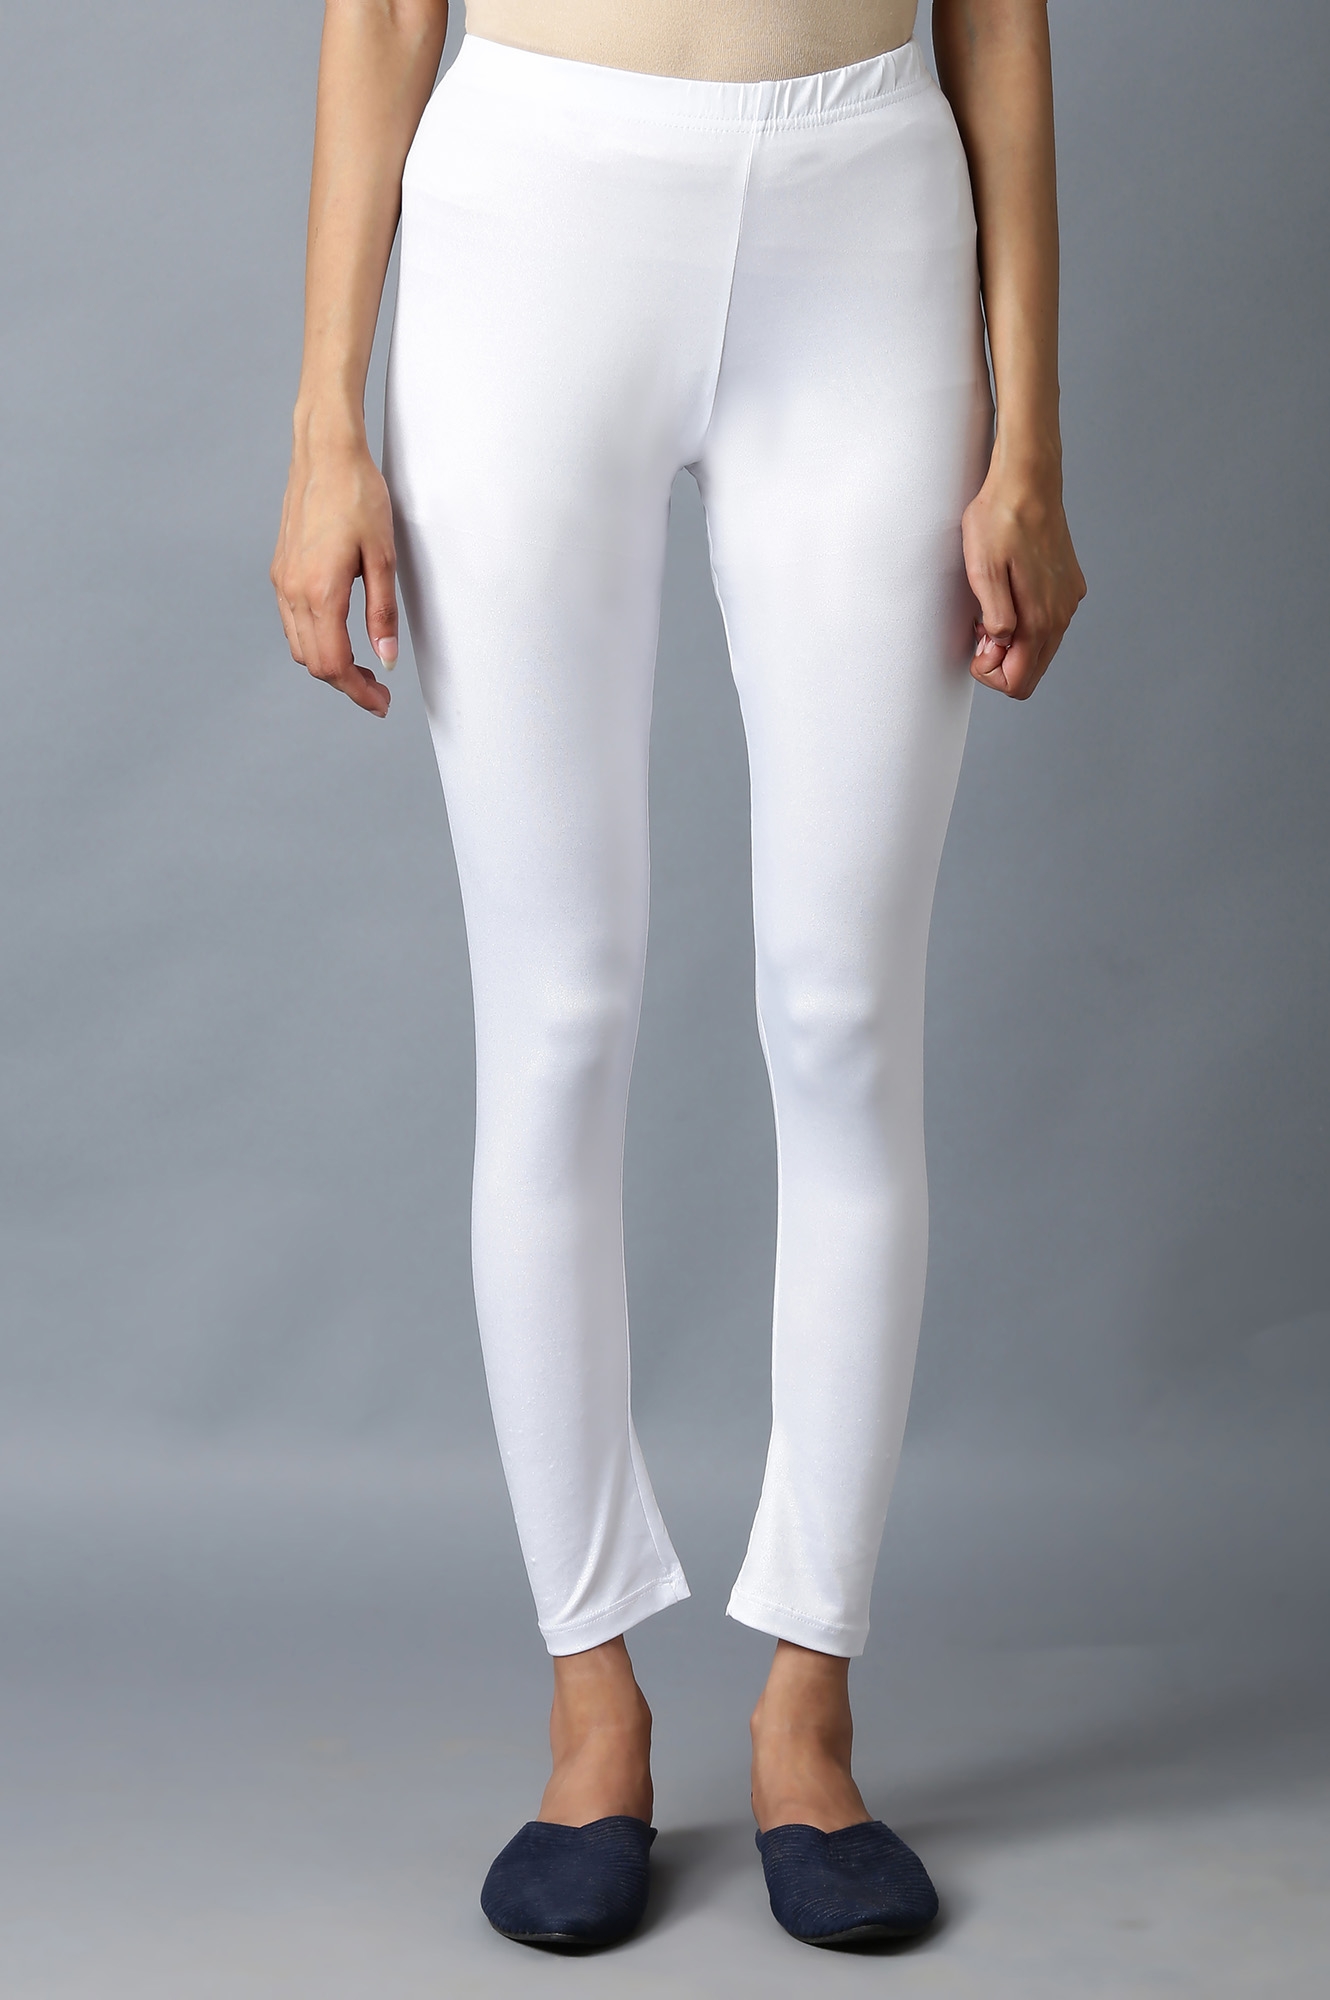 Elleven | Shimmer White Snug Fit Tights 0